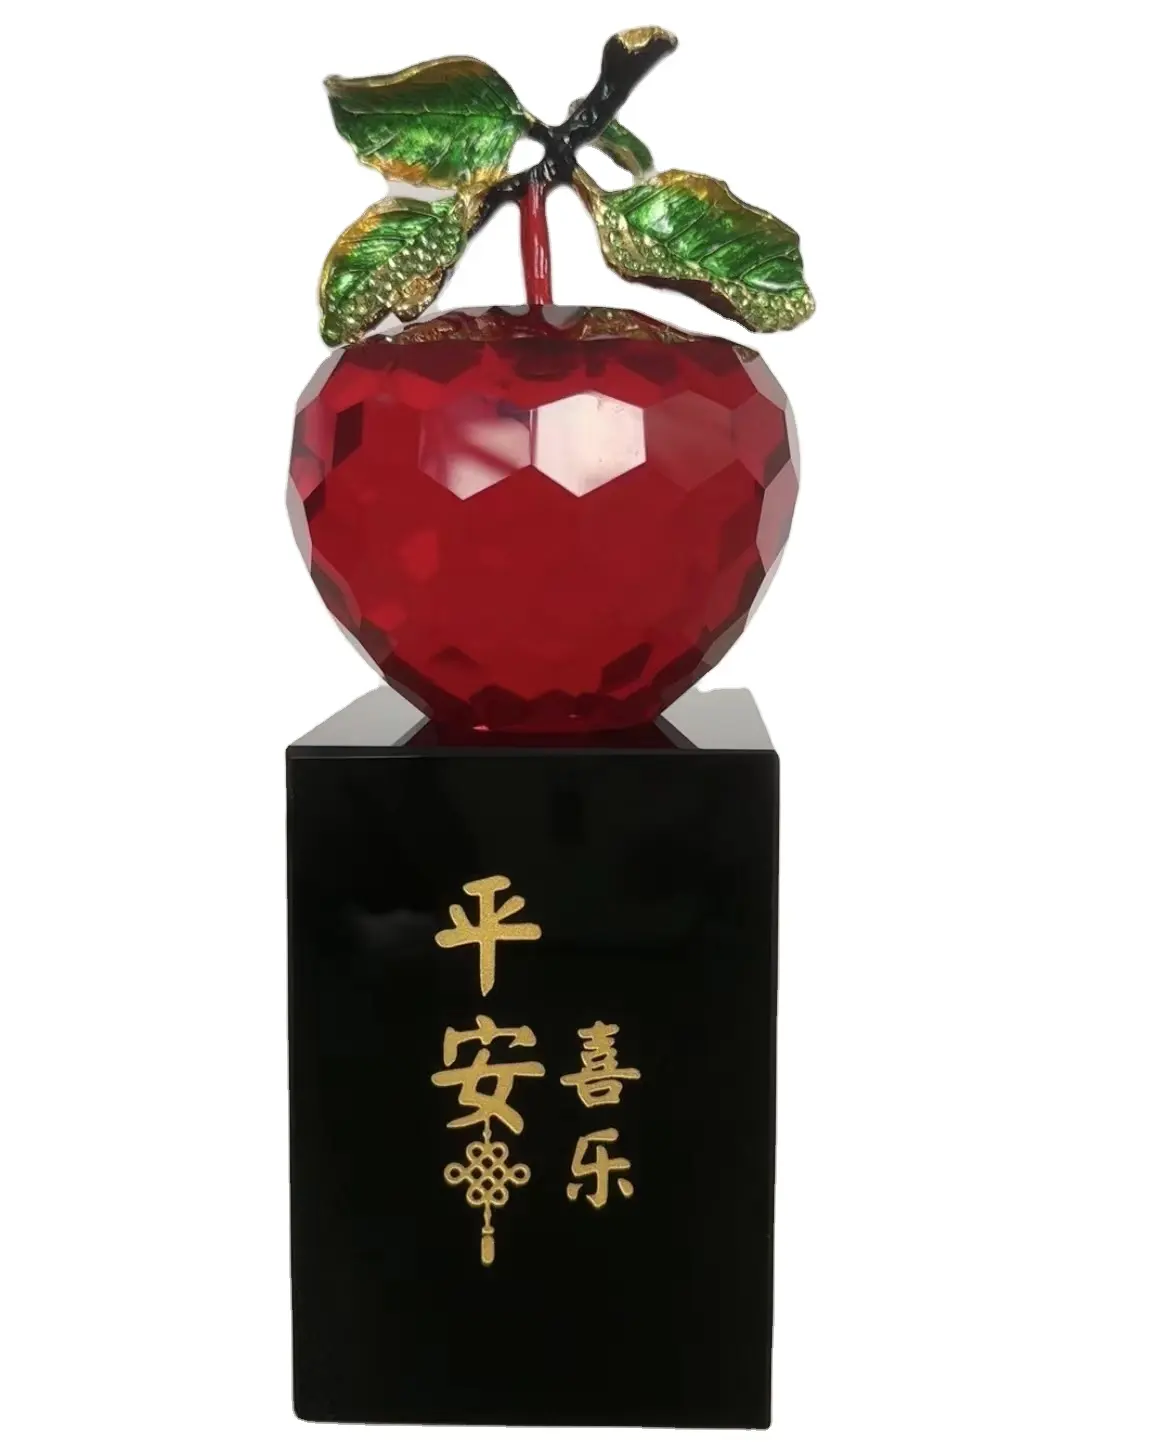 Artesanato de maçã em estilo chinês, símbolo de paz e felicidade, decoração para casa, sala de estar, presente de bons desejos, novidade